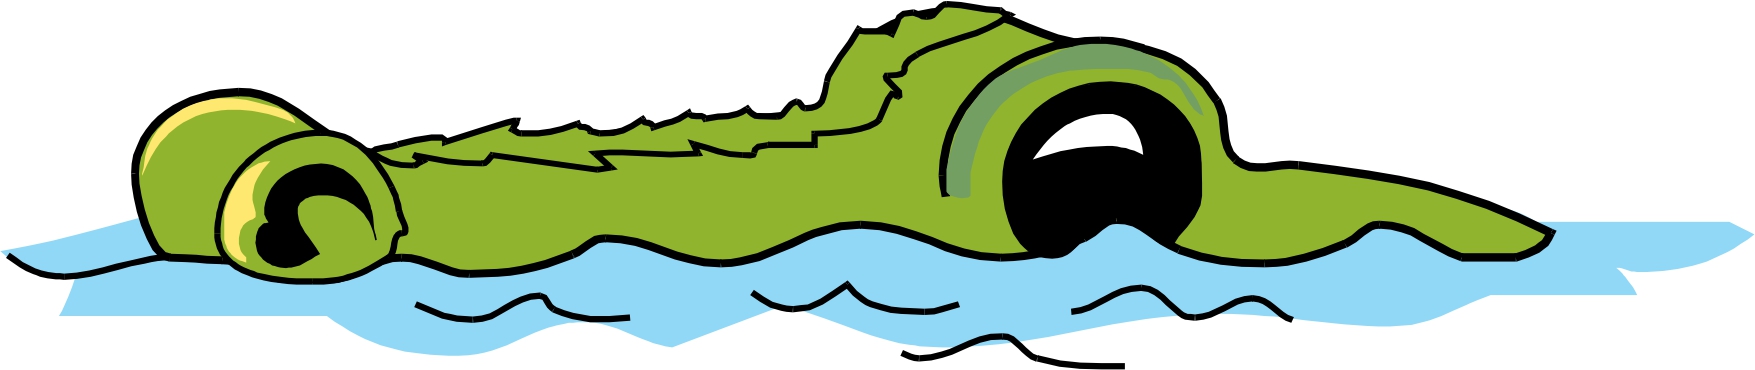 Cartoon Alligator Picture